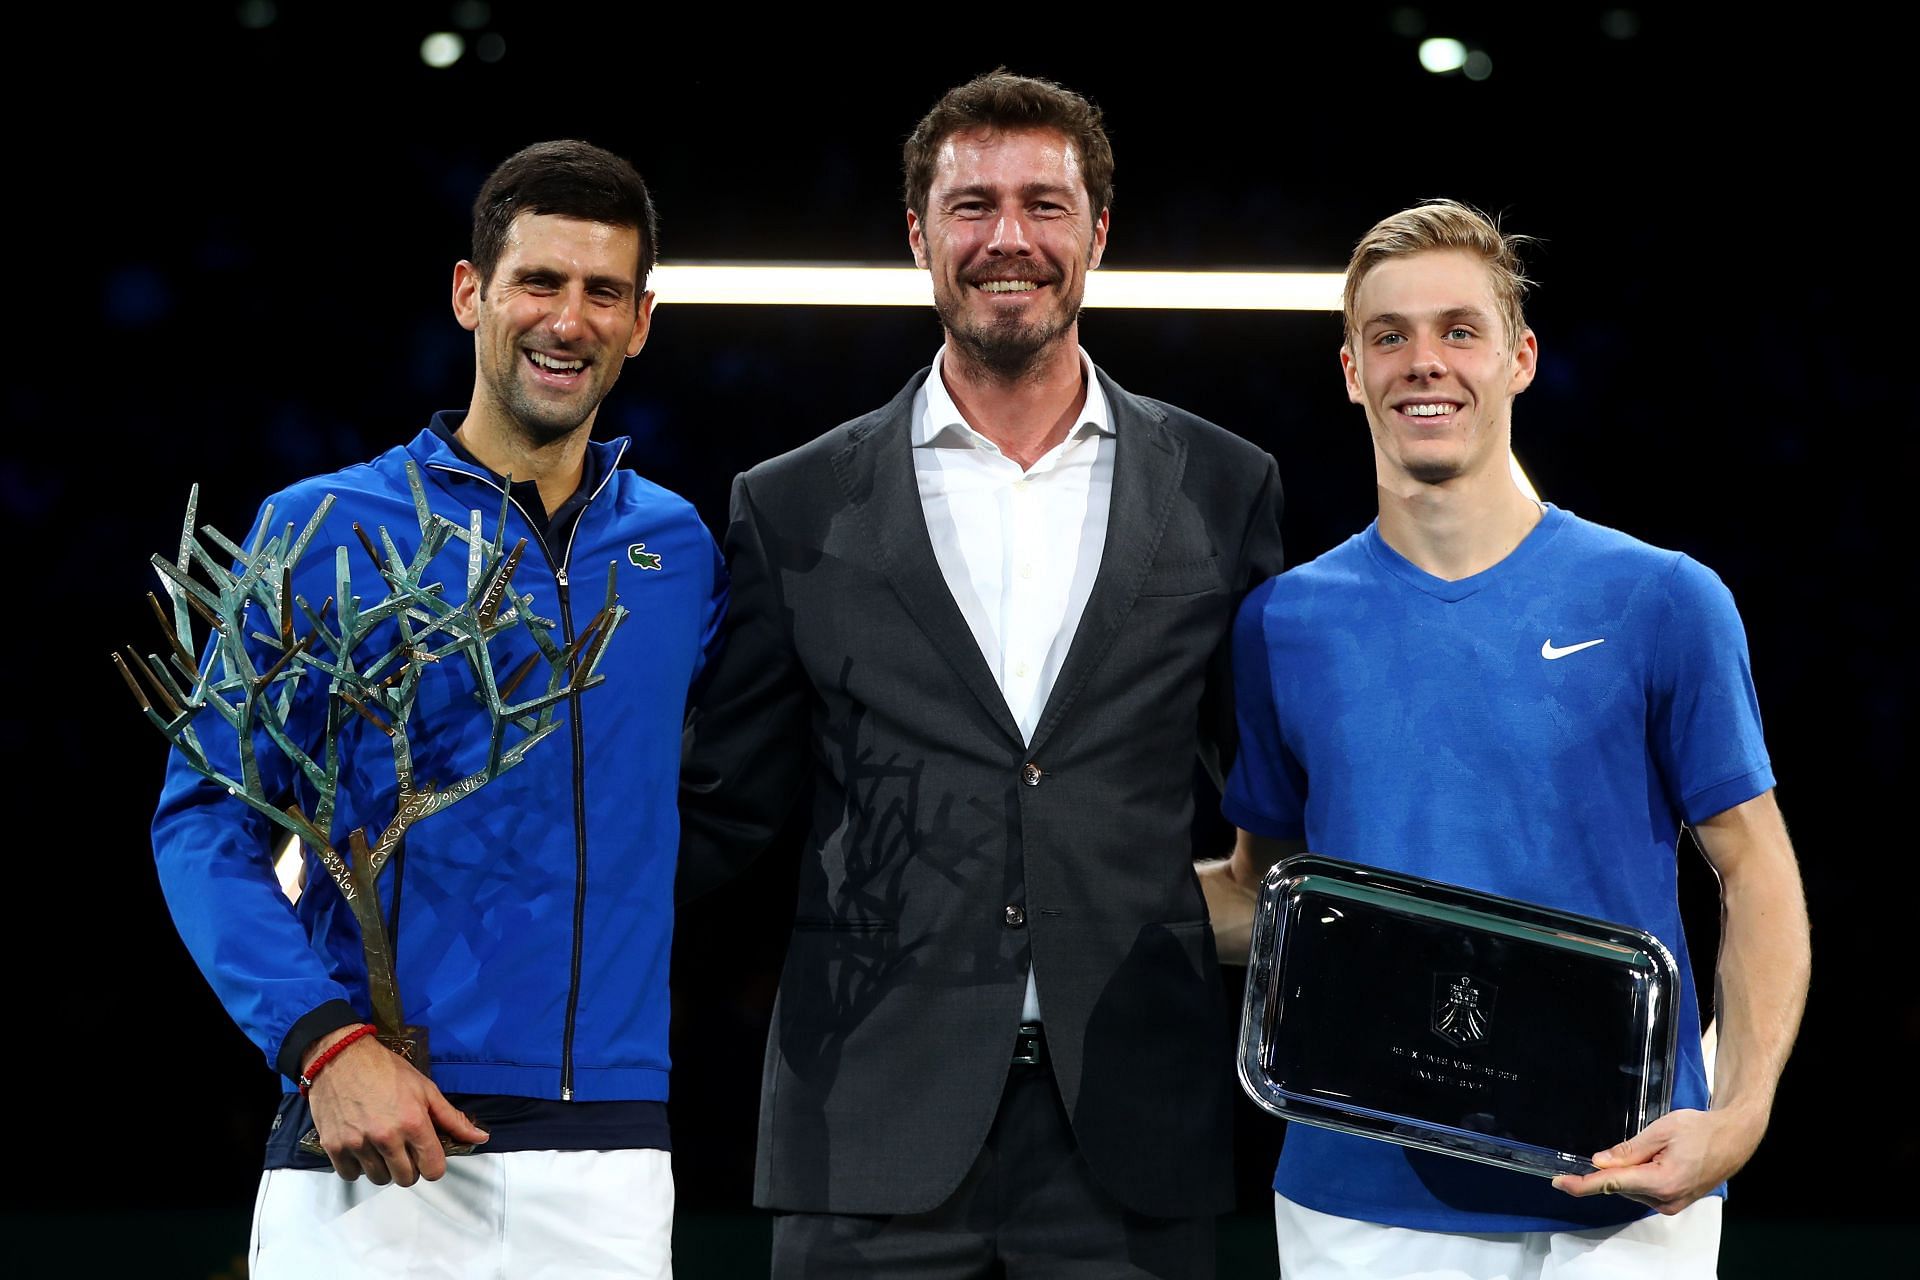 From L-R: Novak Djokovic, Marat Safin and Denis Shapovalov.